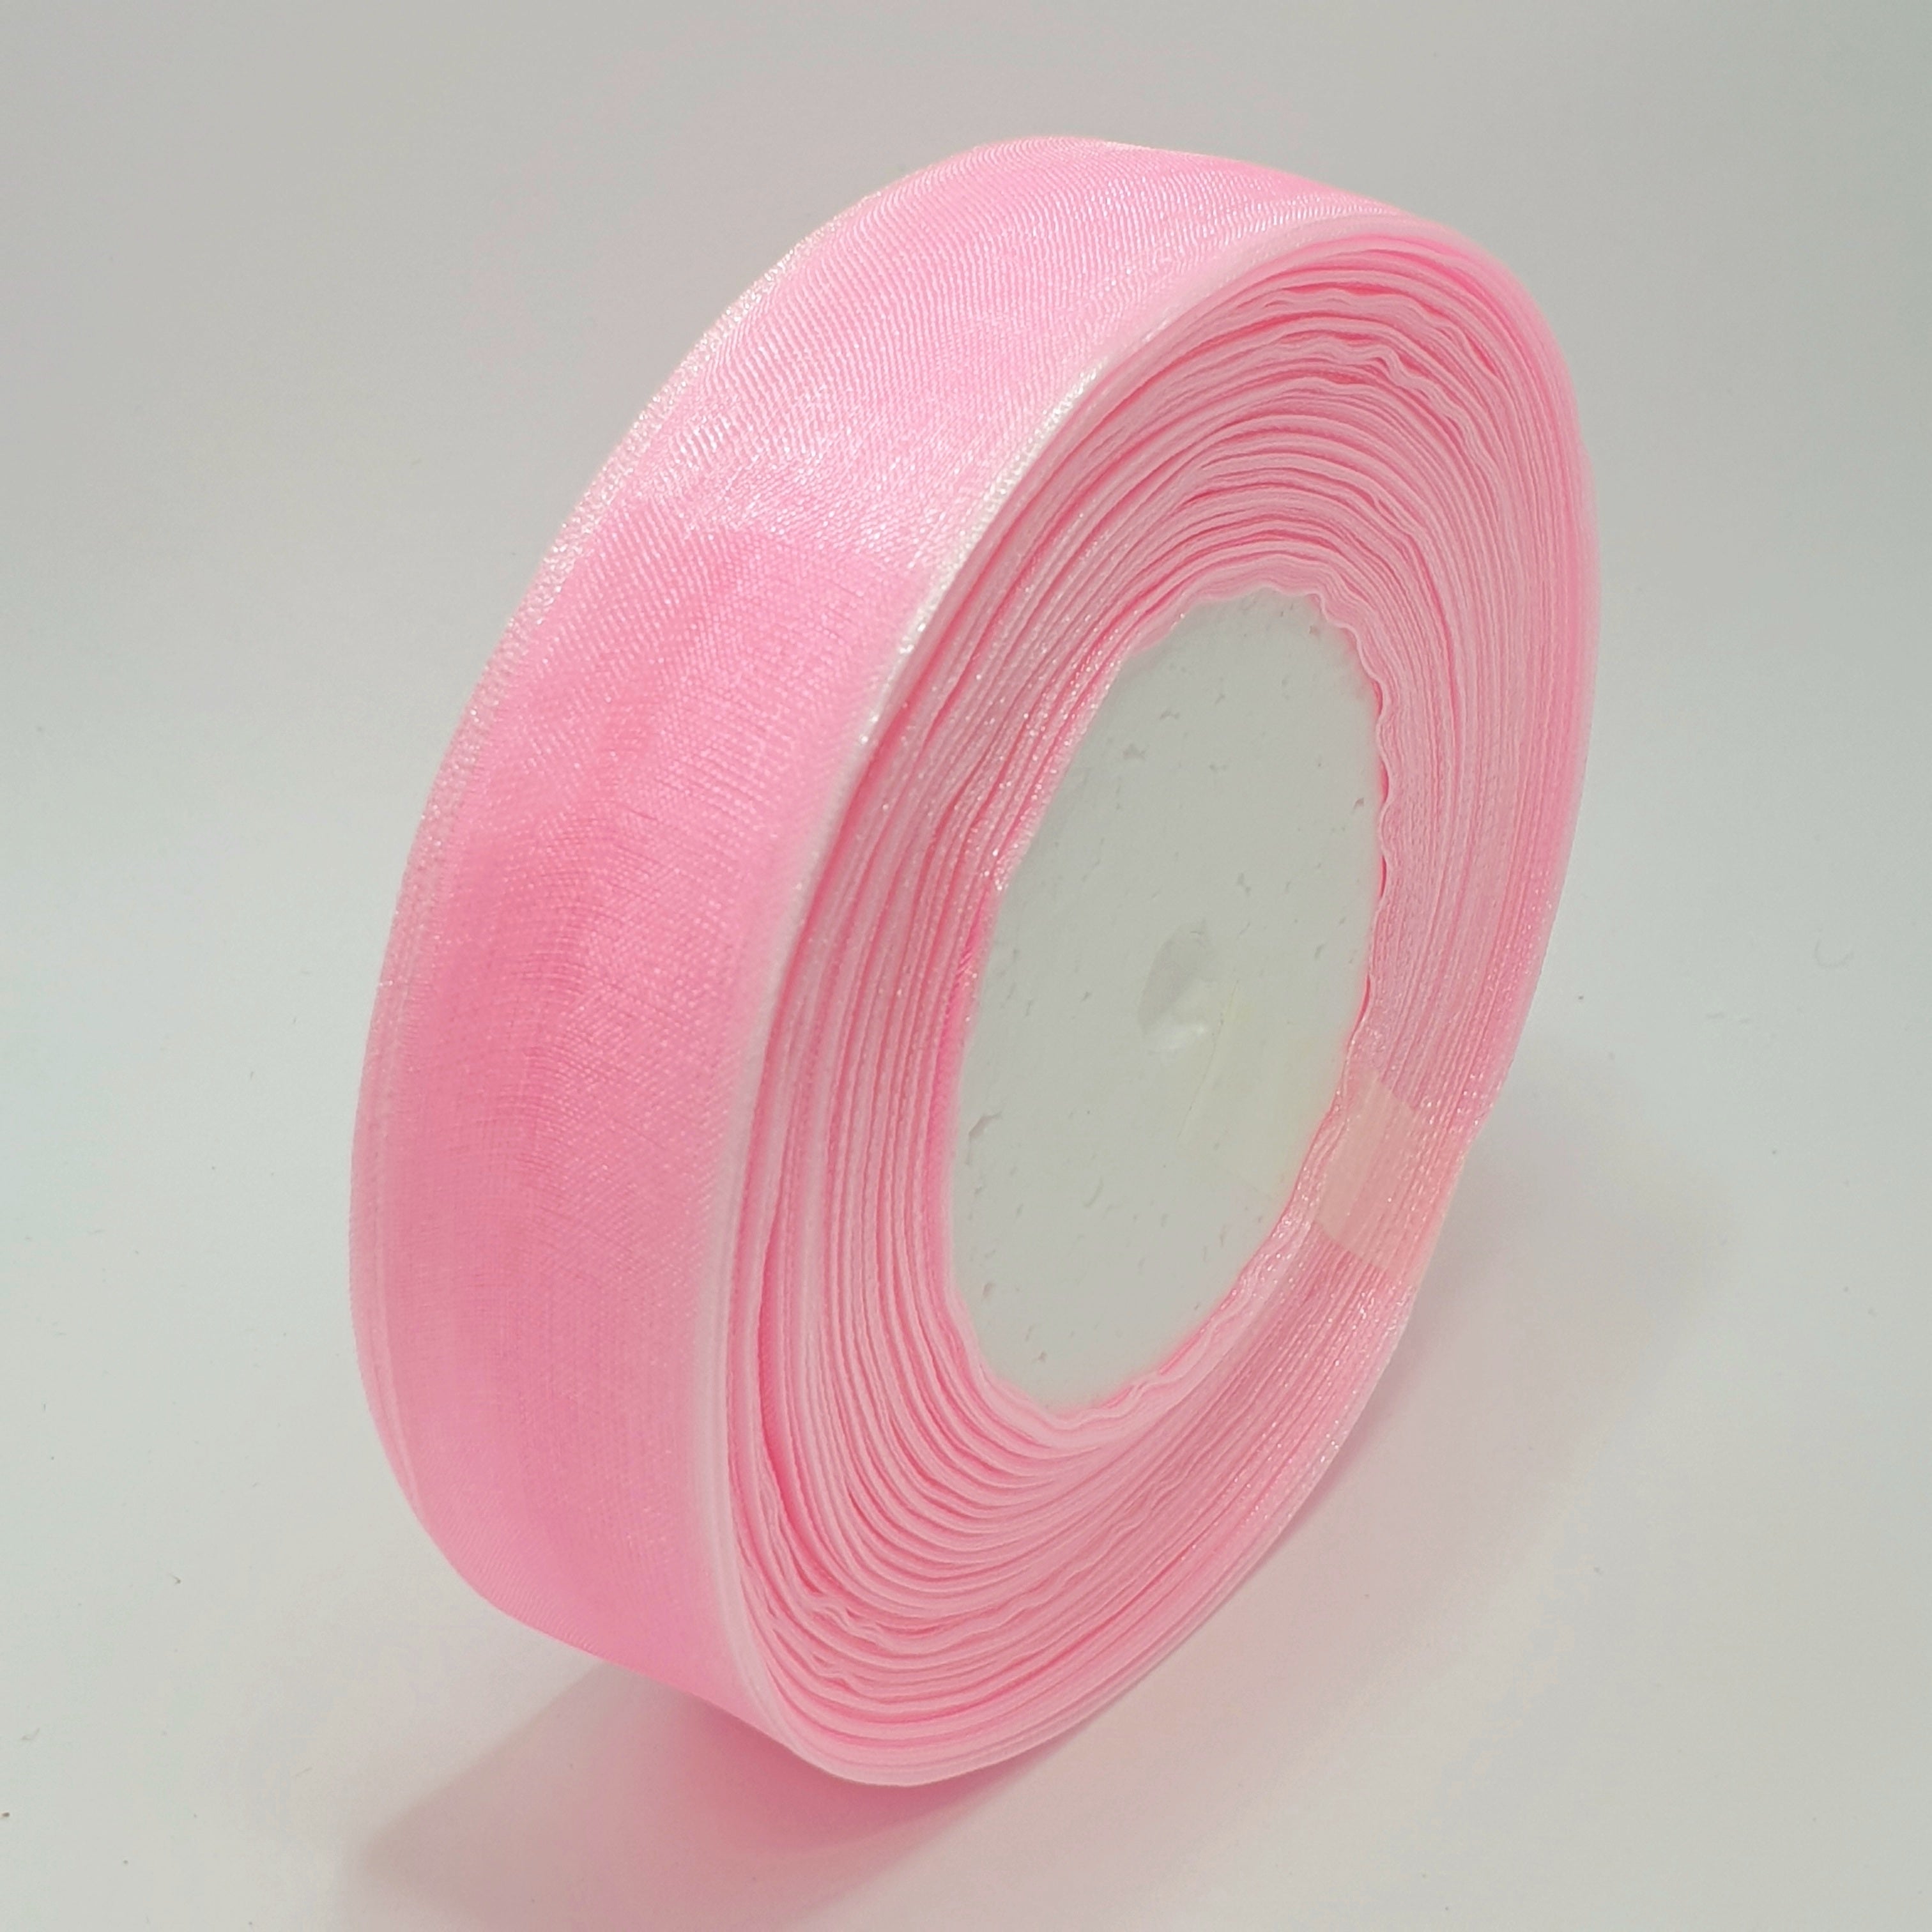 MajorCrafts 25mm 45metres Sheer Organza Fabric Ribbon Roll Pink Shade R1004